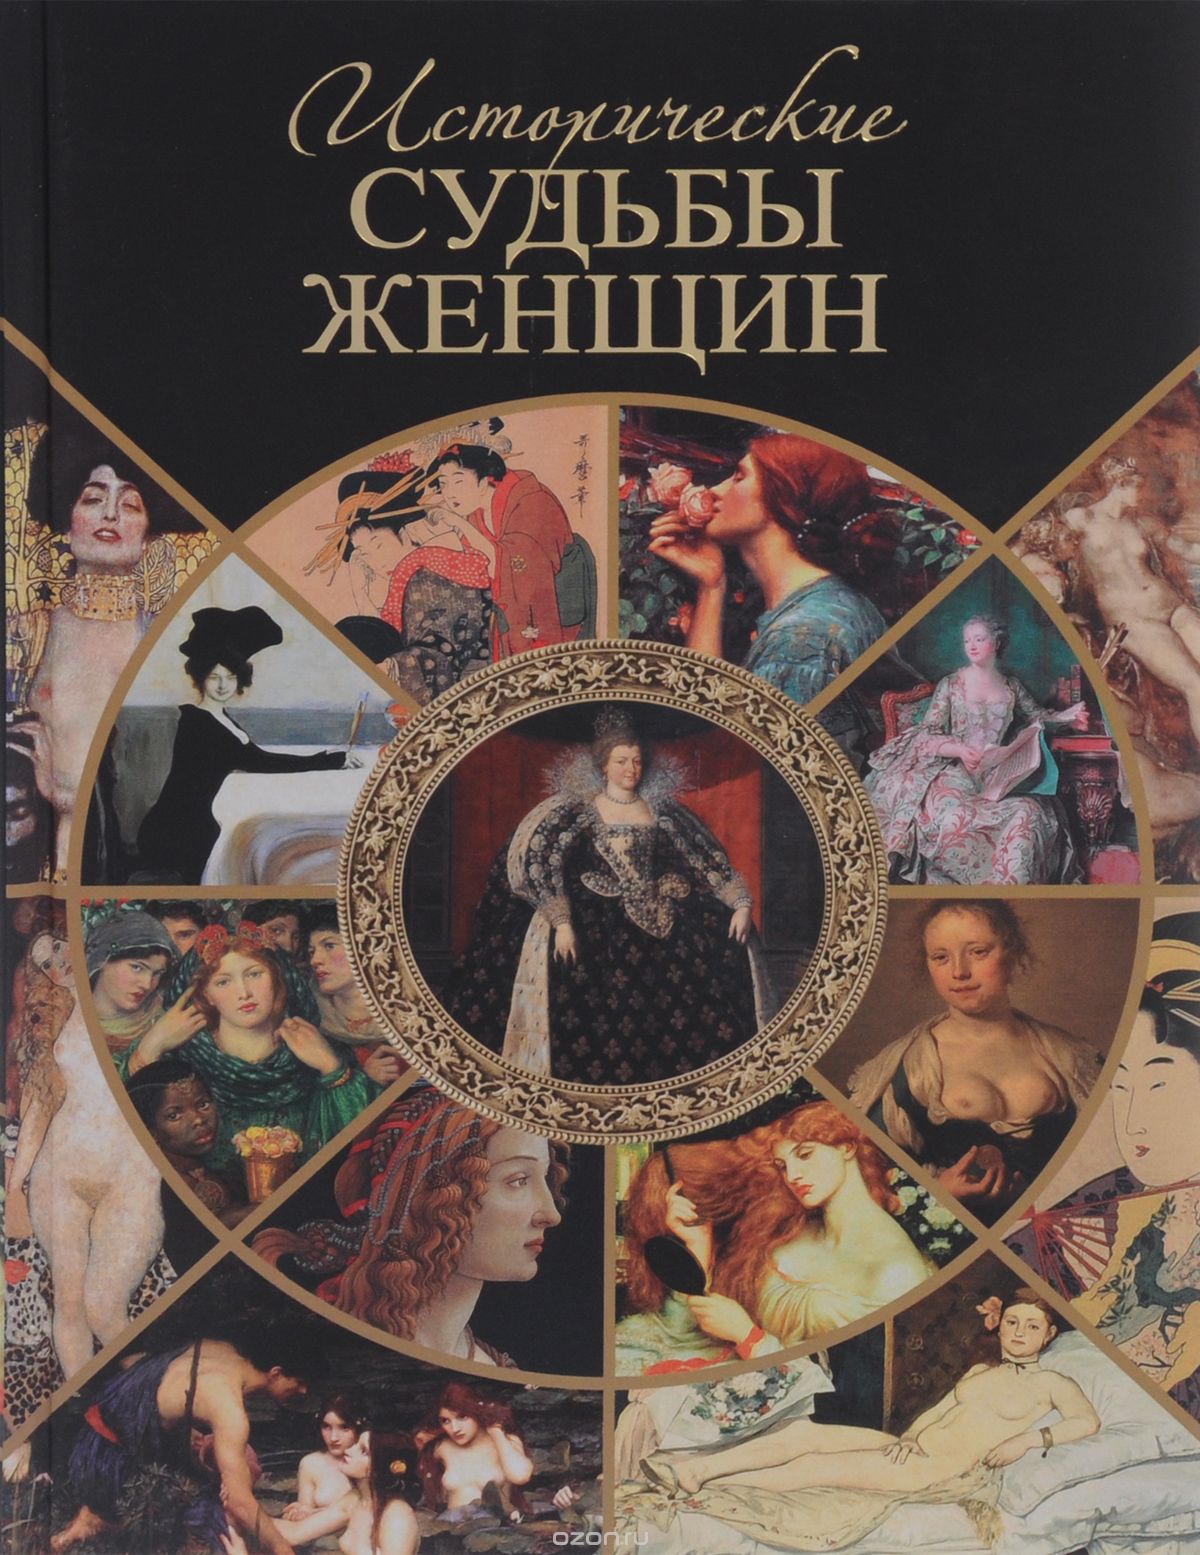 Исторические судьбы женщин, Серафим Шашков